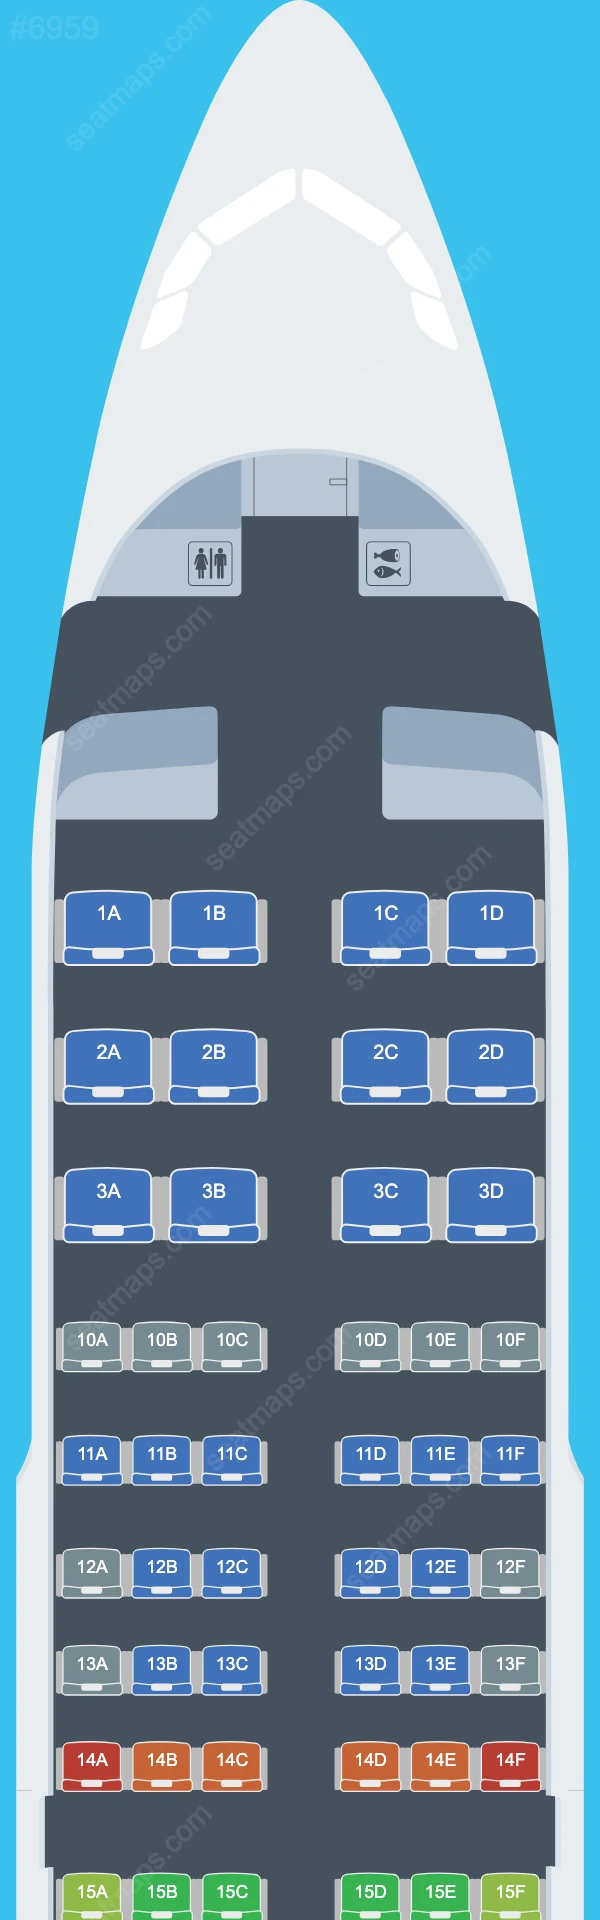 Delta Airbus A319 Plan de Salle A319-100 V.1